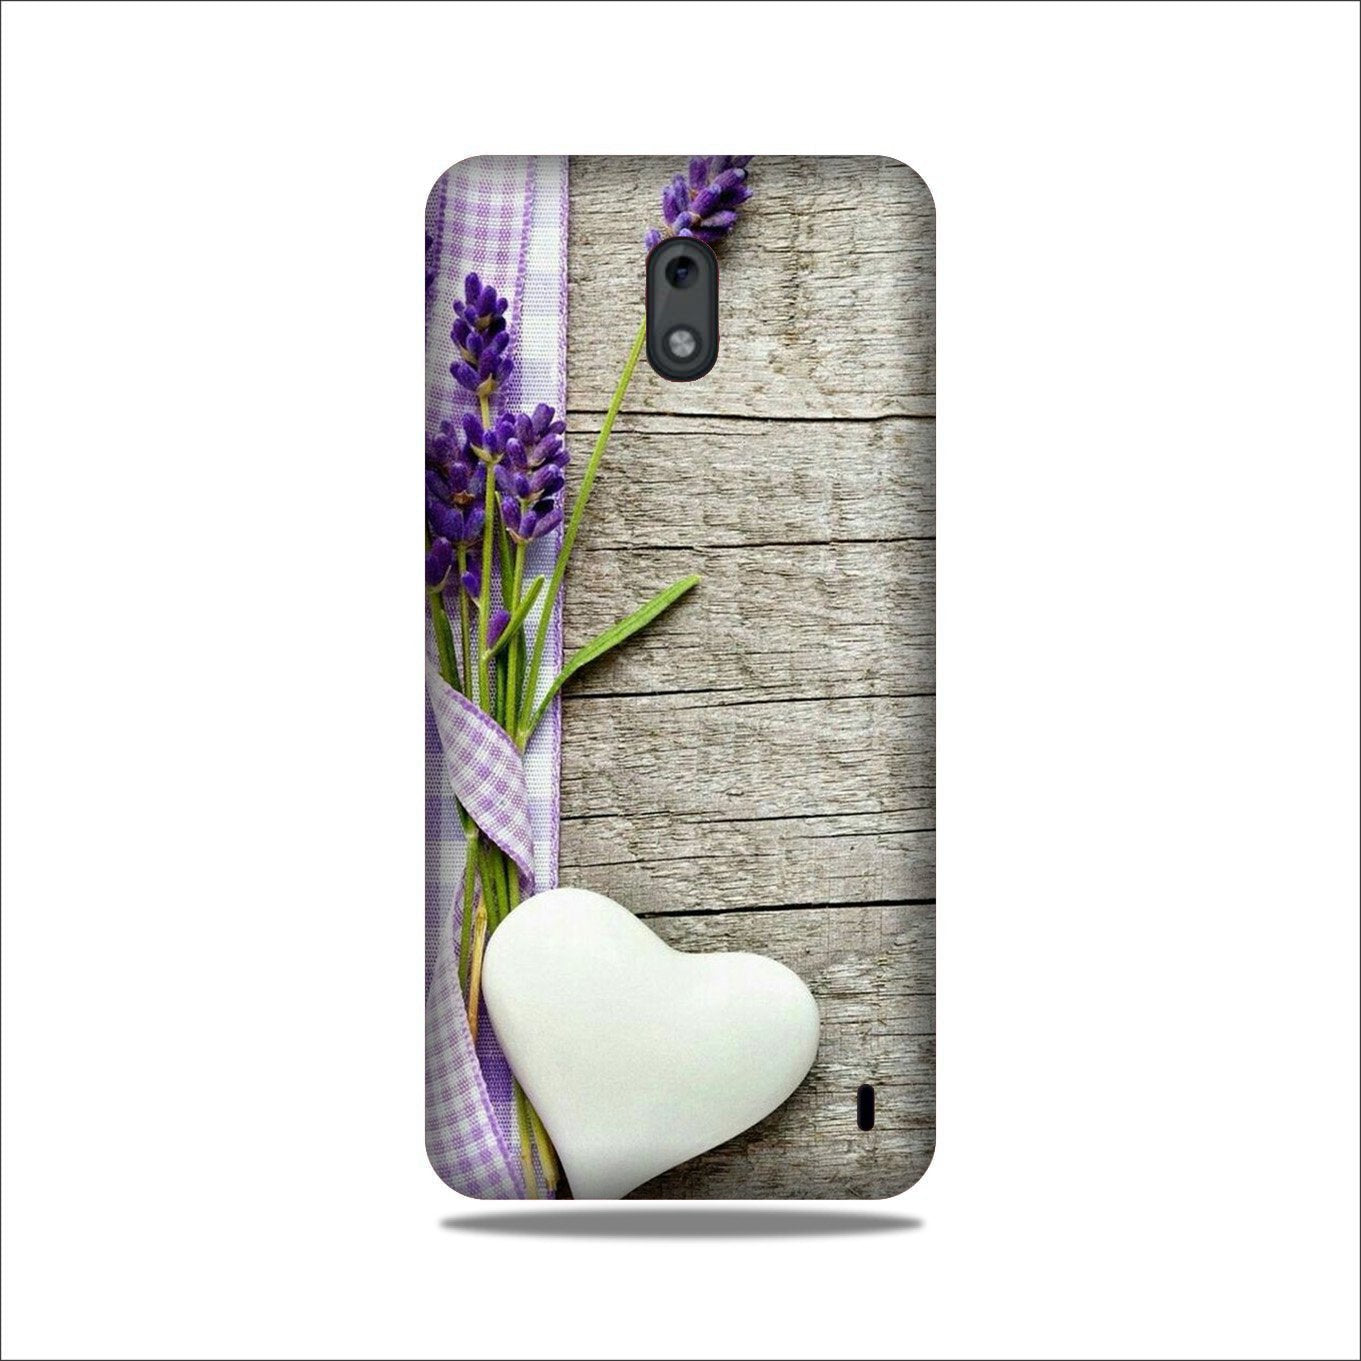 White Heart Case for Nokia 2.2 (Design No. 298)